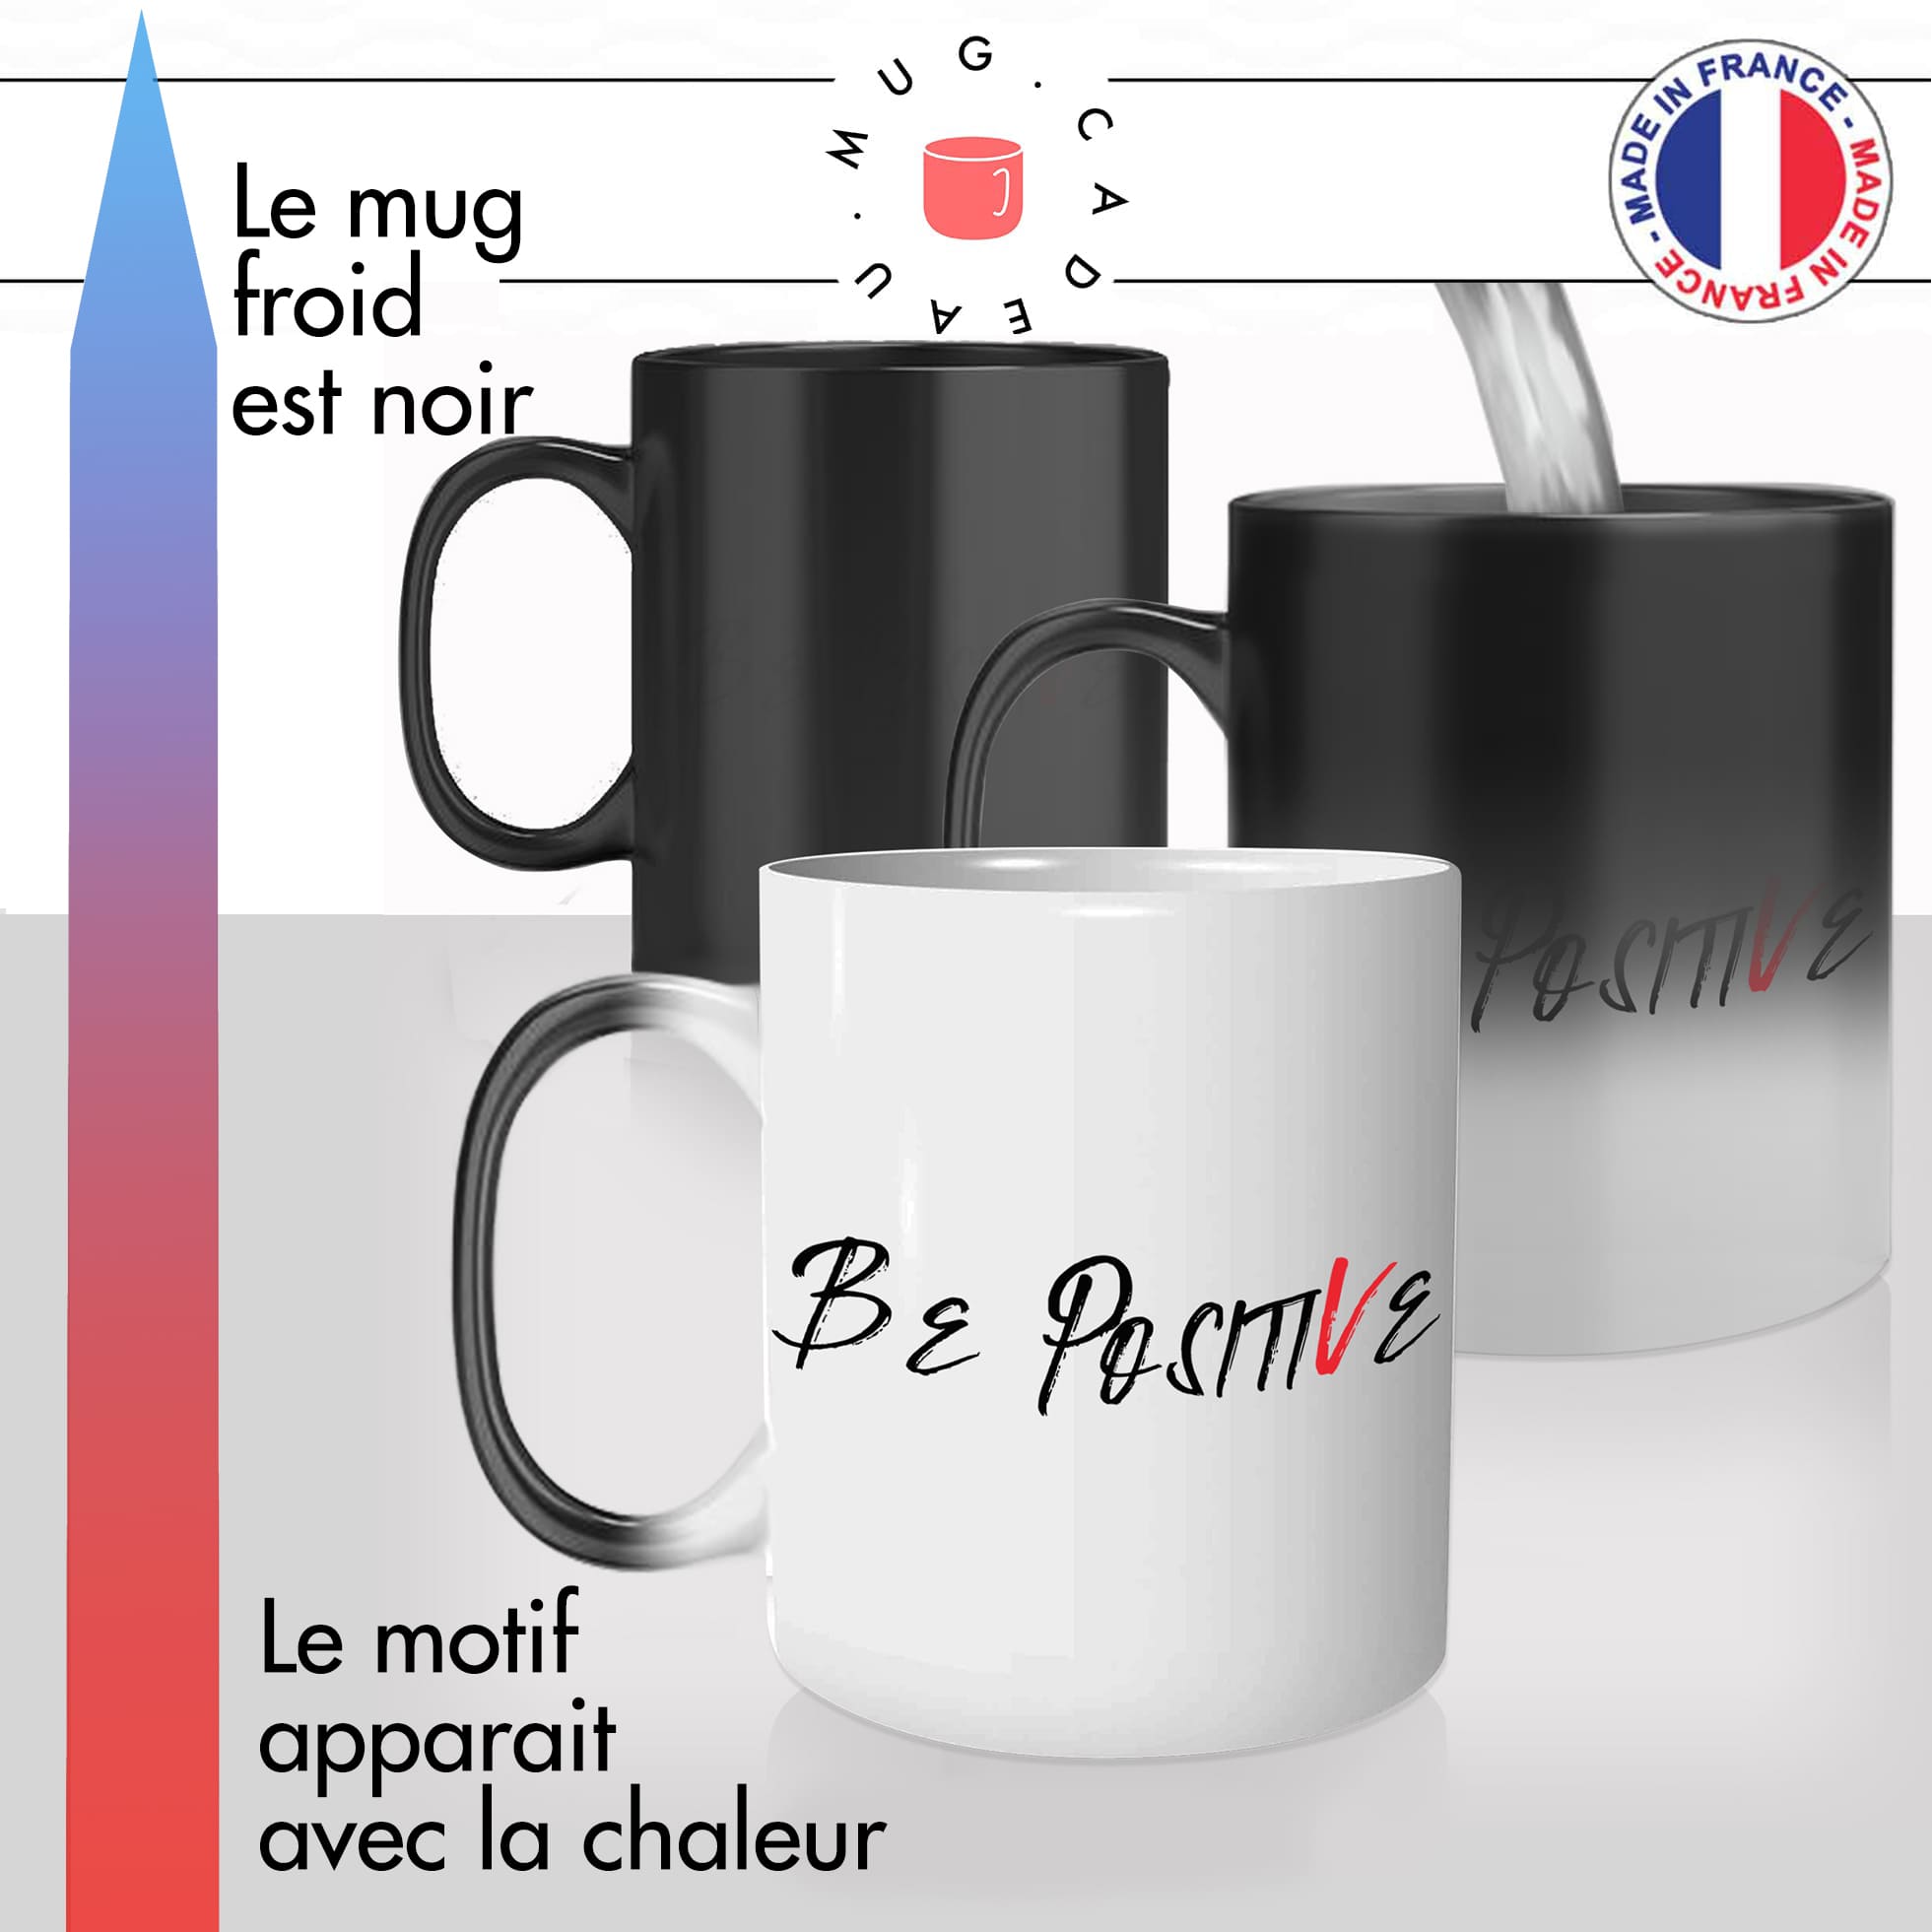 mug magique thermoréactif thermo chauffant citation be positive motivation café thé bonheur idée cadeau fun cool original